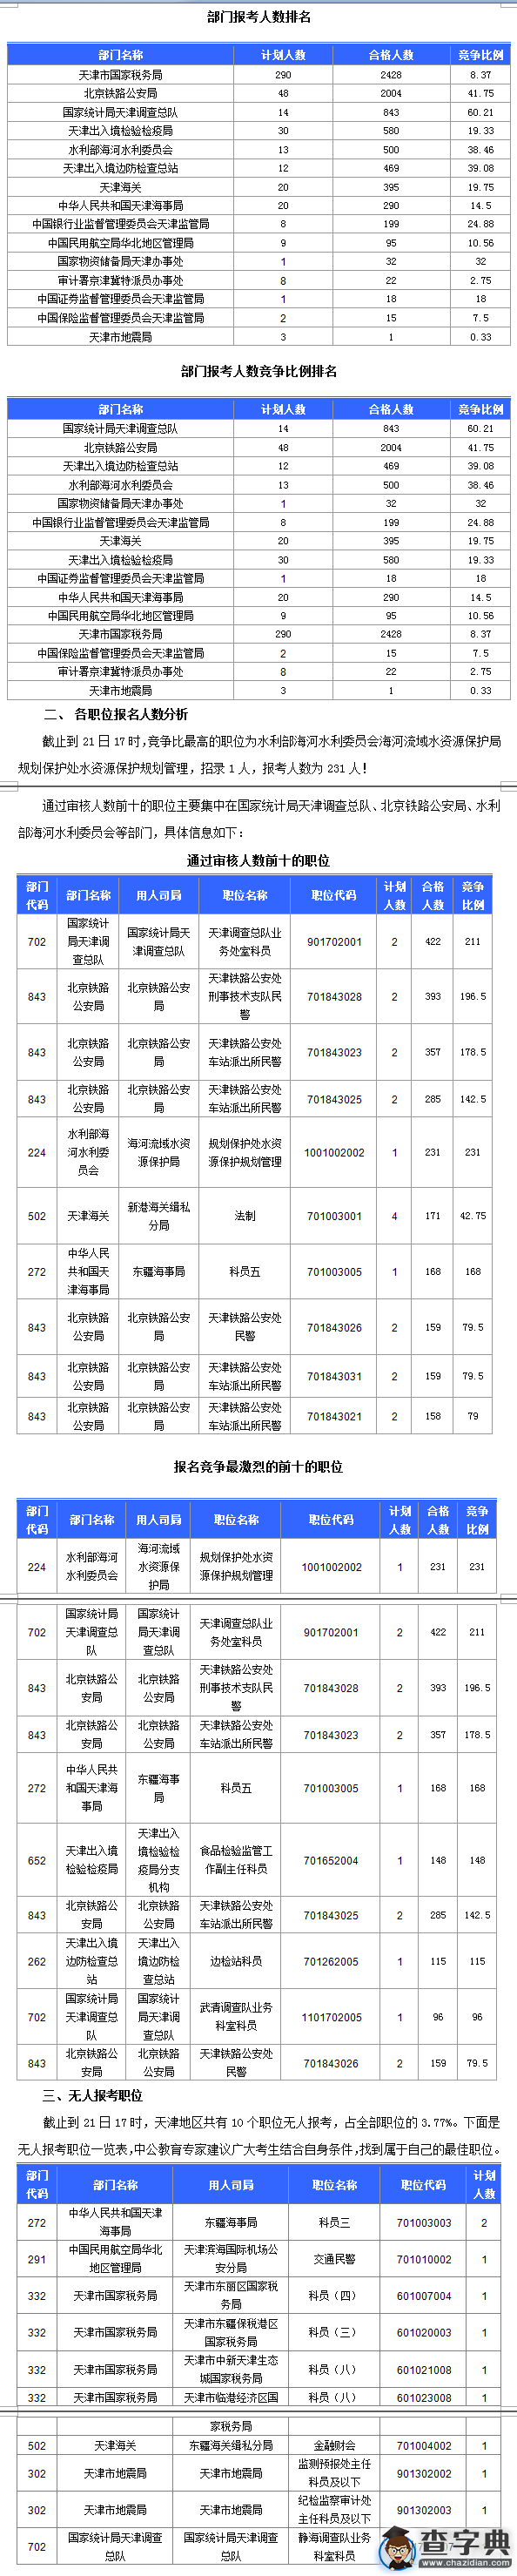 2016国考天津通过审核人数达7891人 最热职位231:11